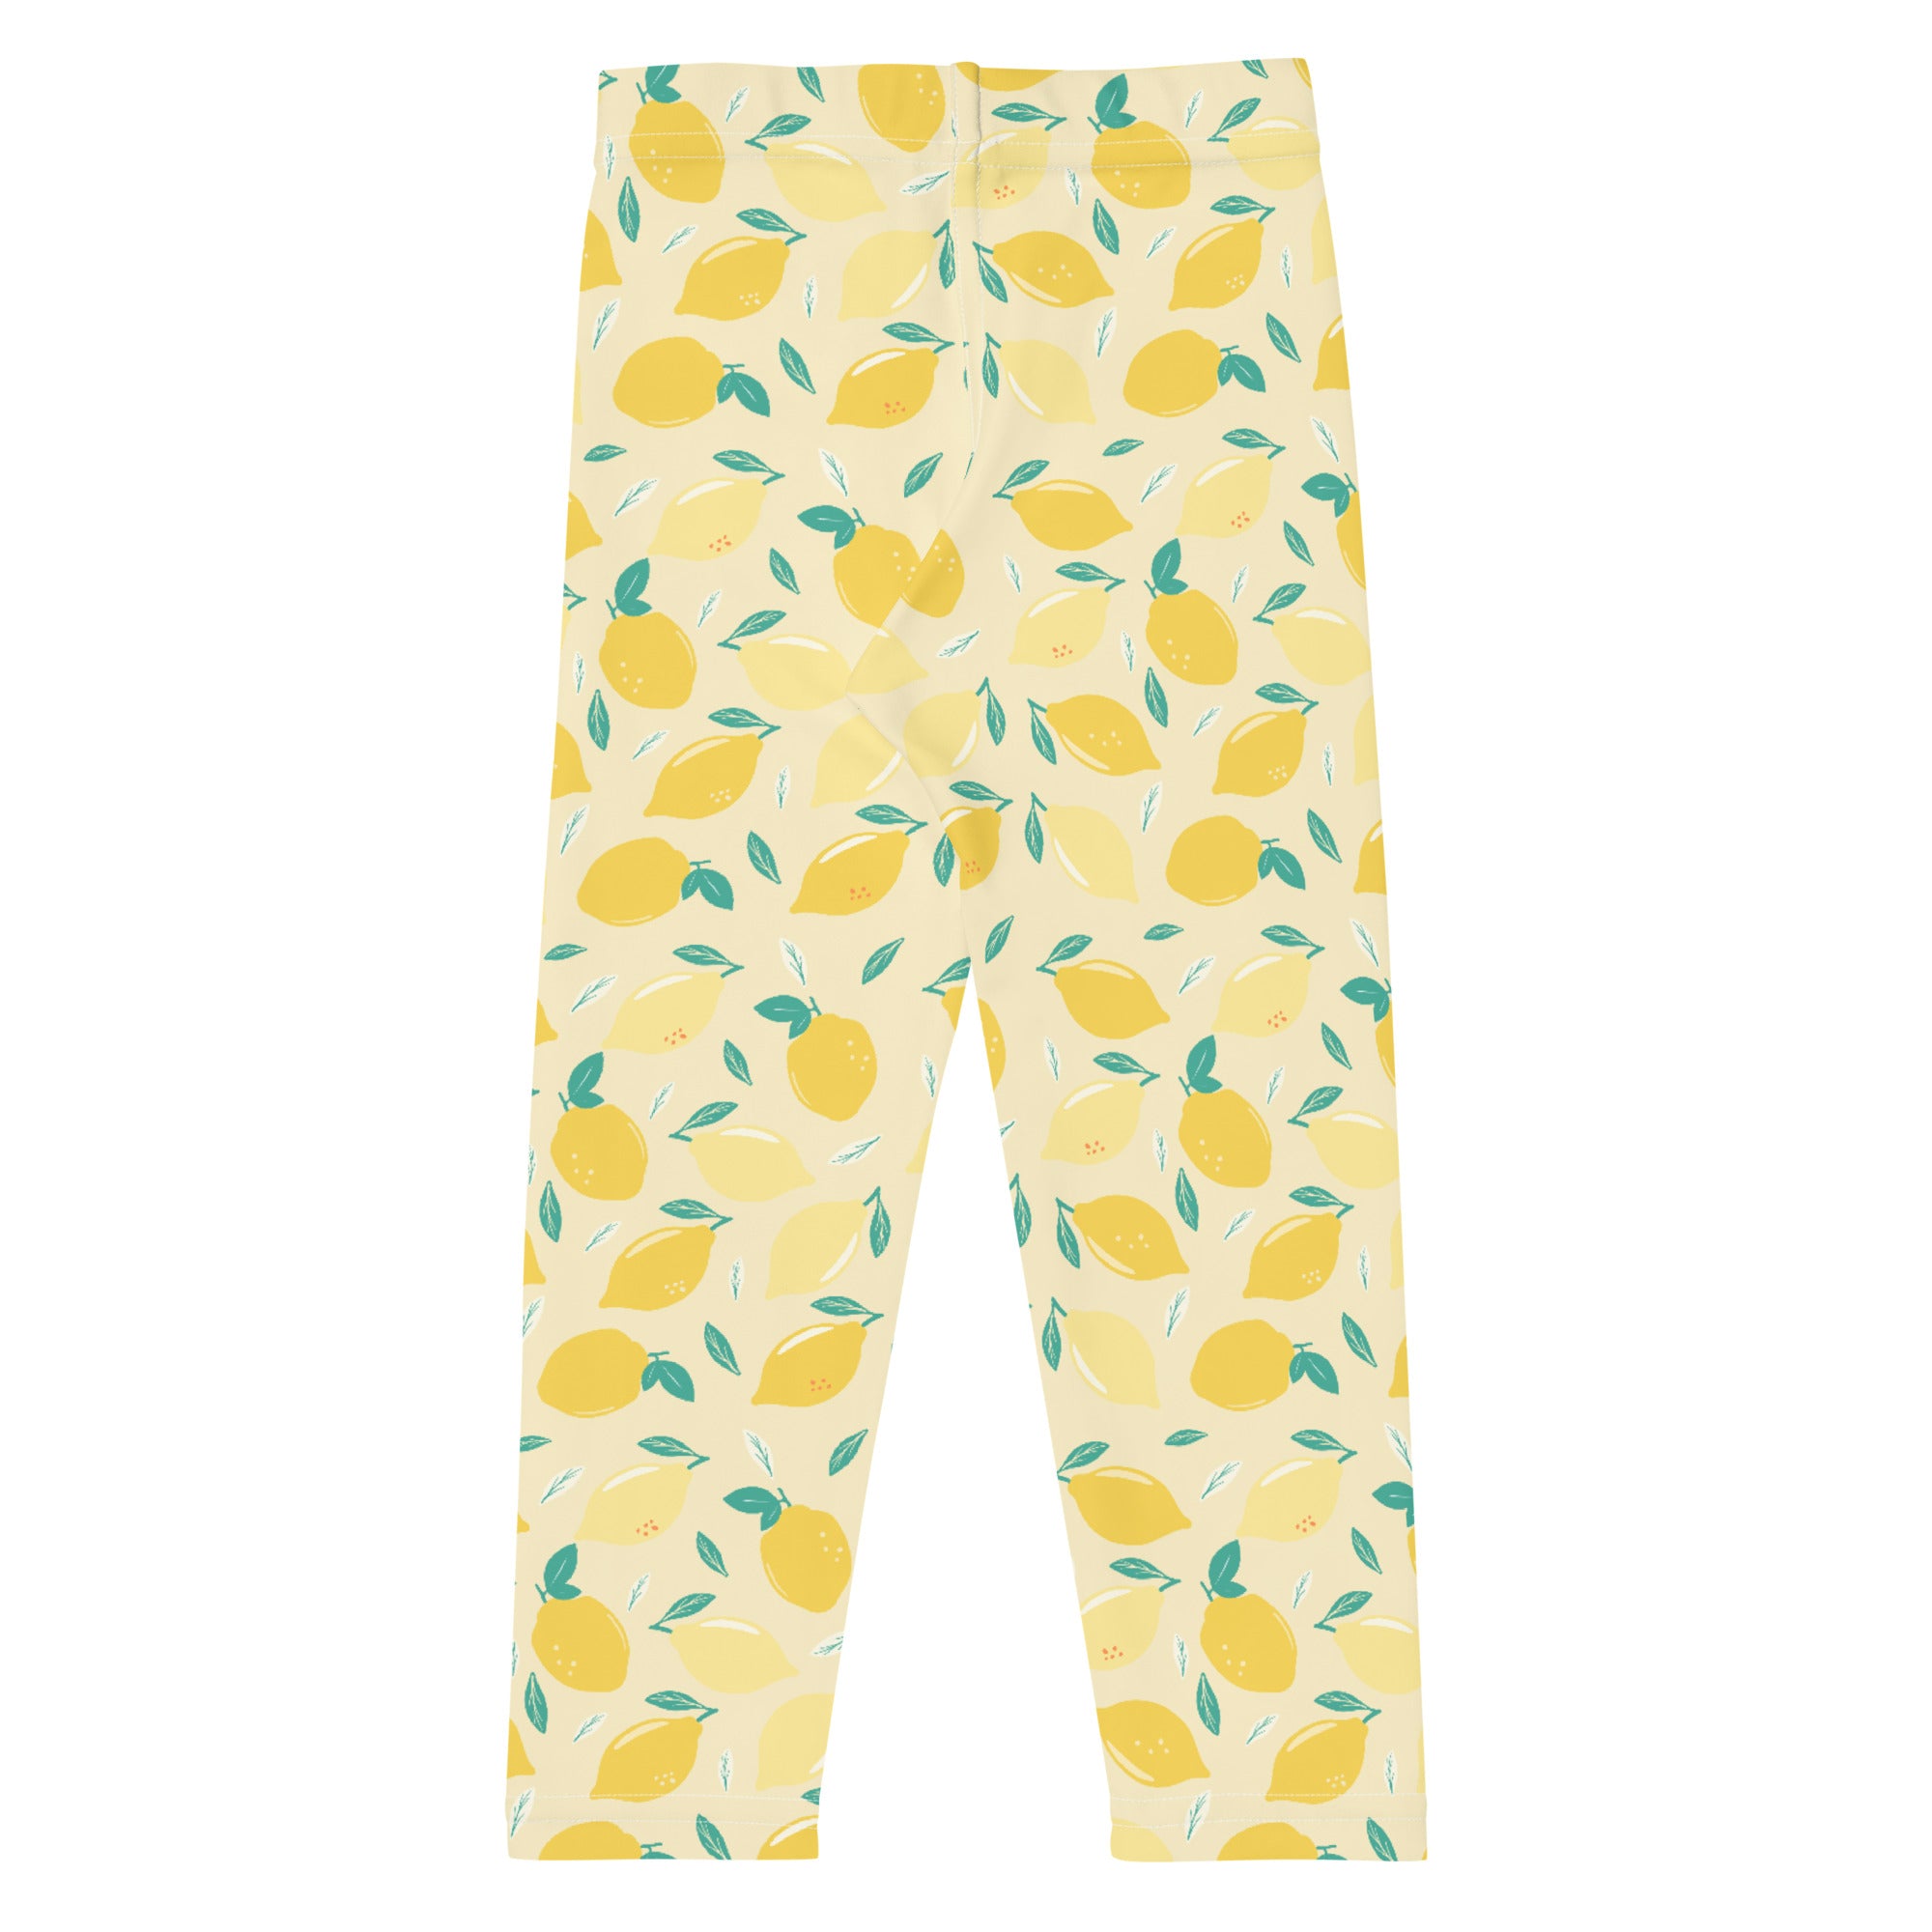 back side of the lemon design leggings for toddlers